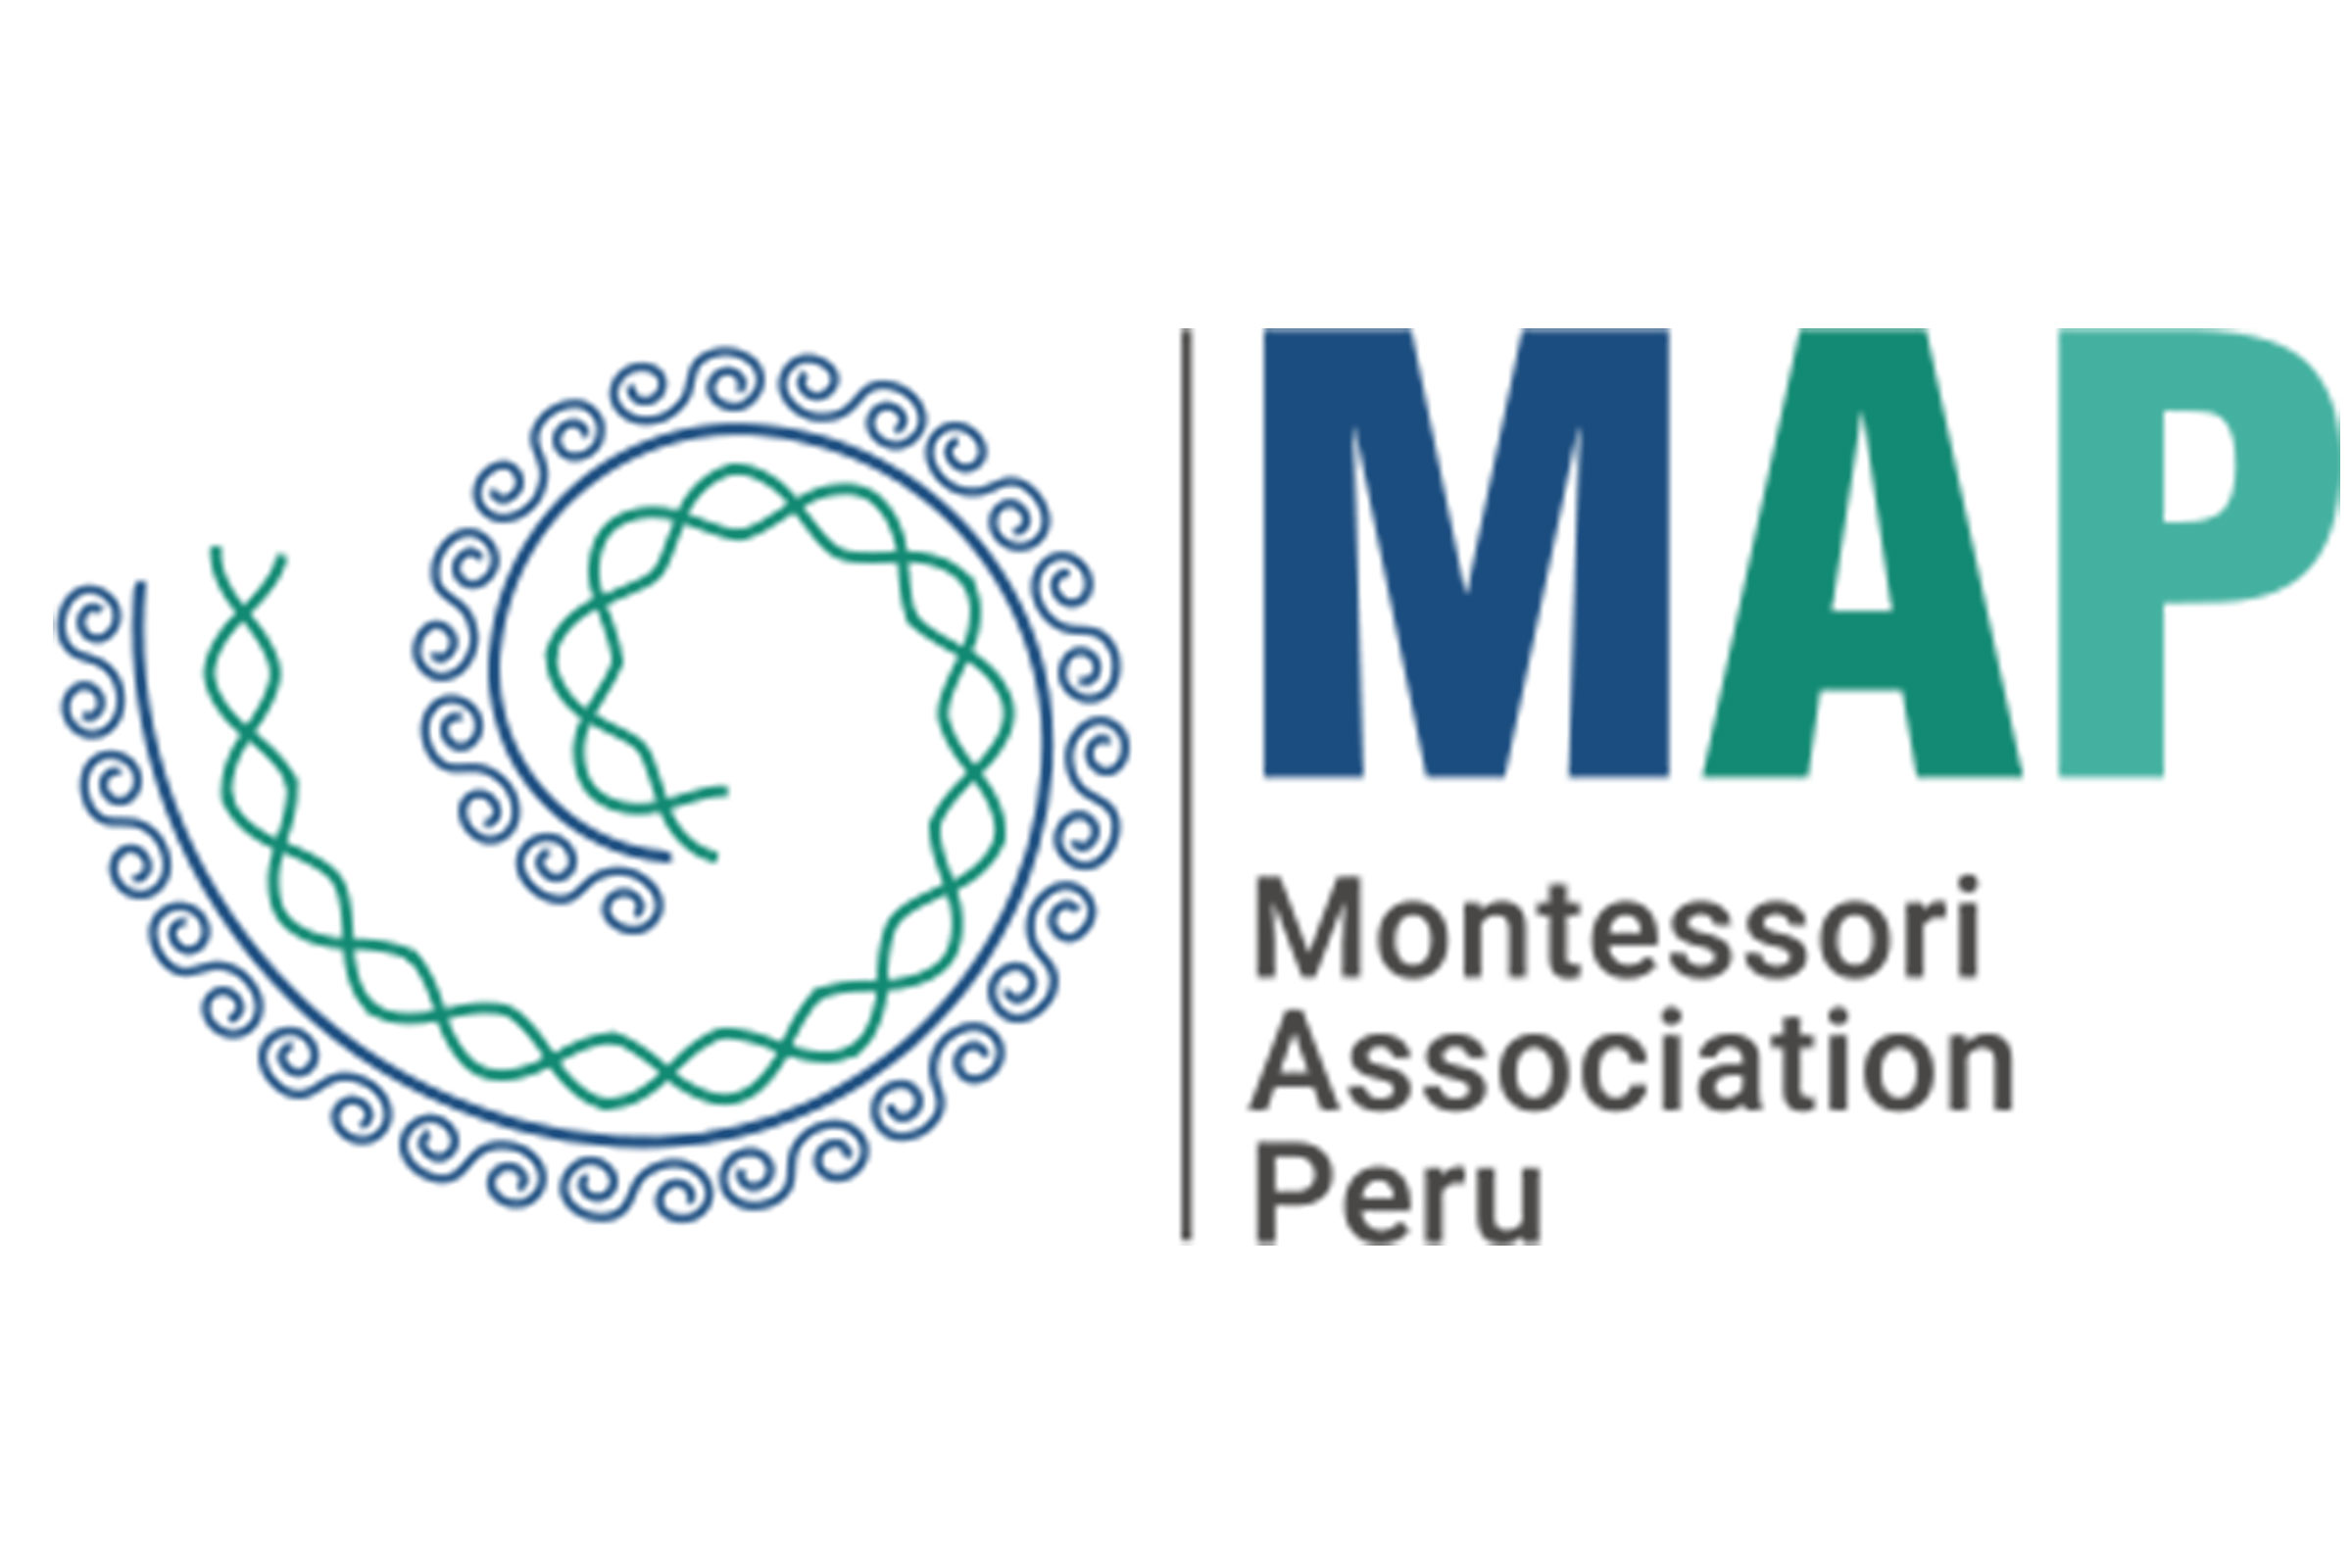 The Montessori Association Peru logo